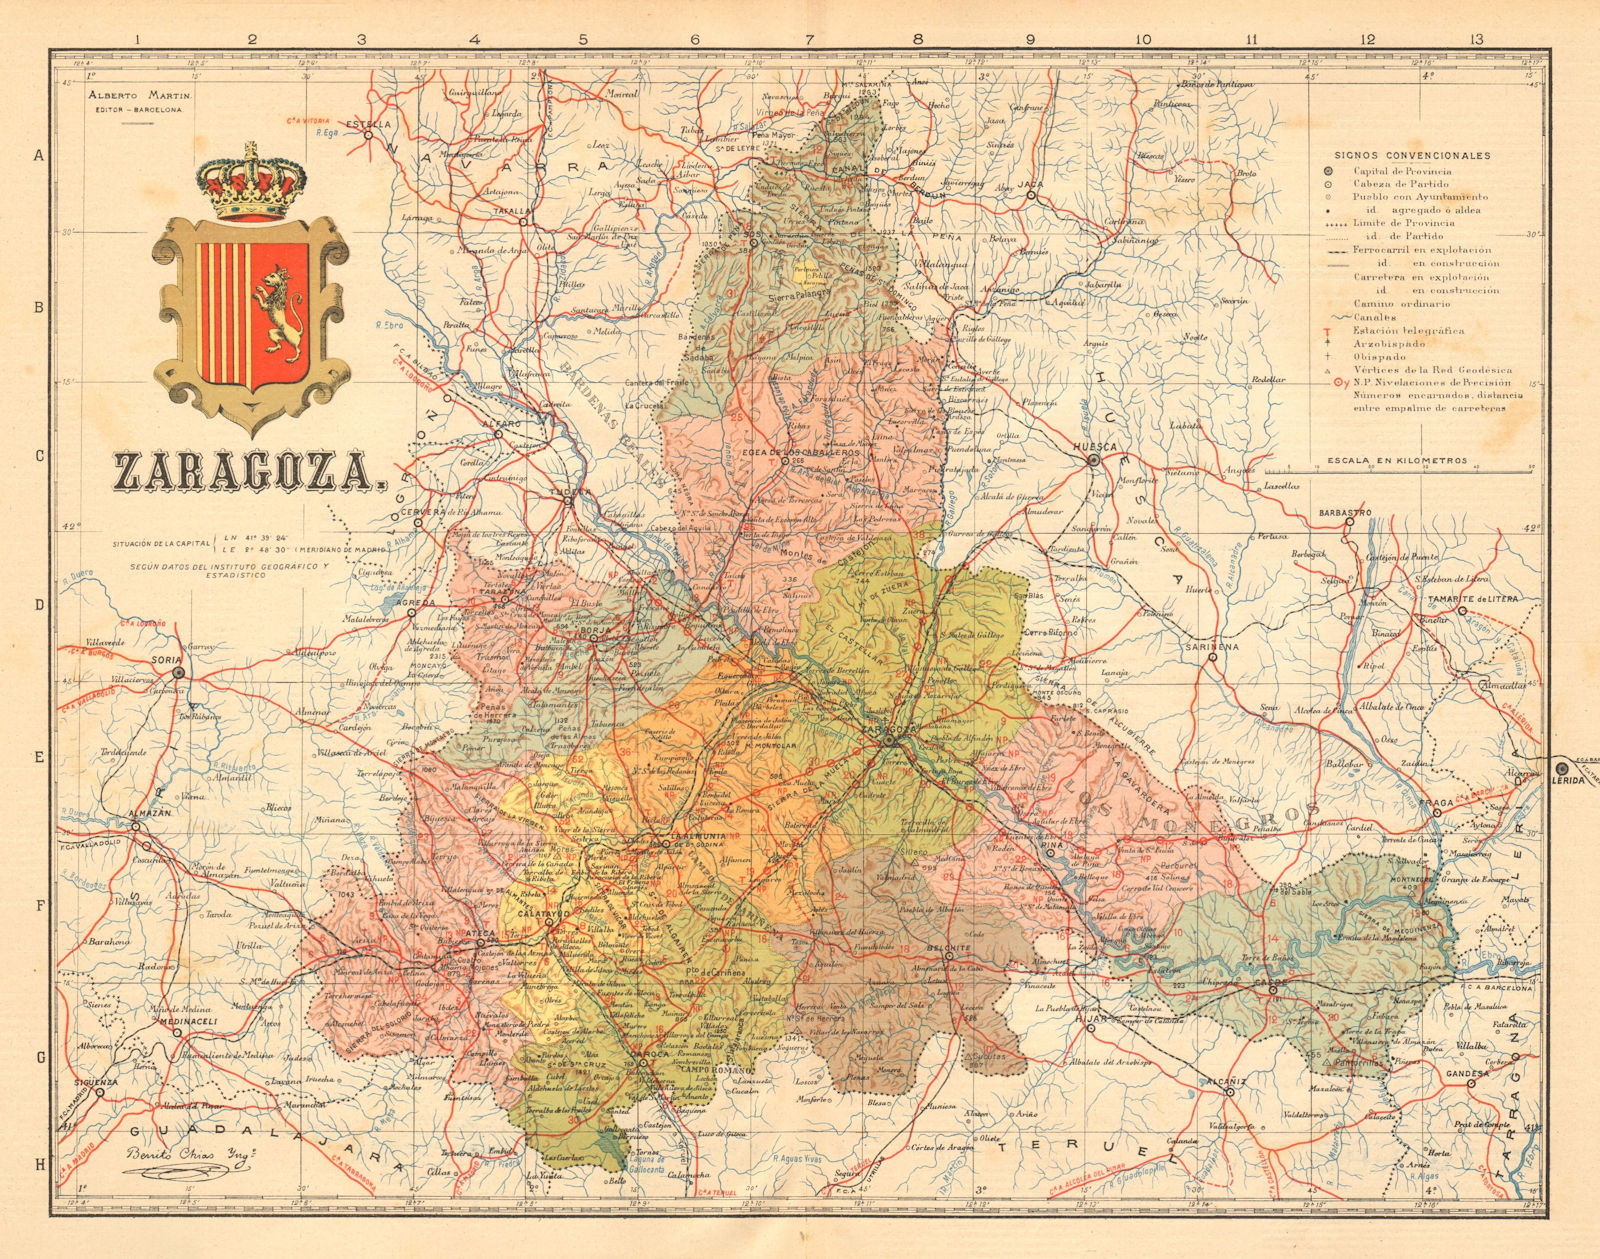 ZARAGOZA. Saragossa. Aragon. Mapa antiguo de la provincia. ALBERTO MARTIN c1911